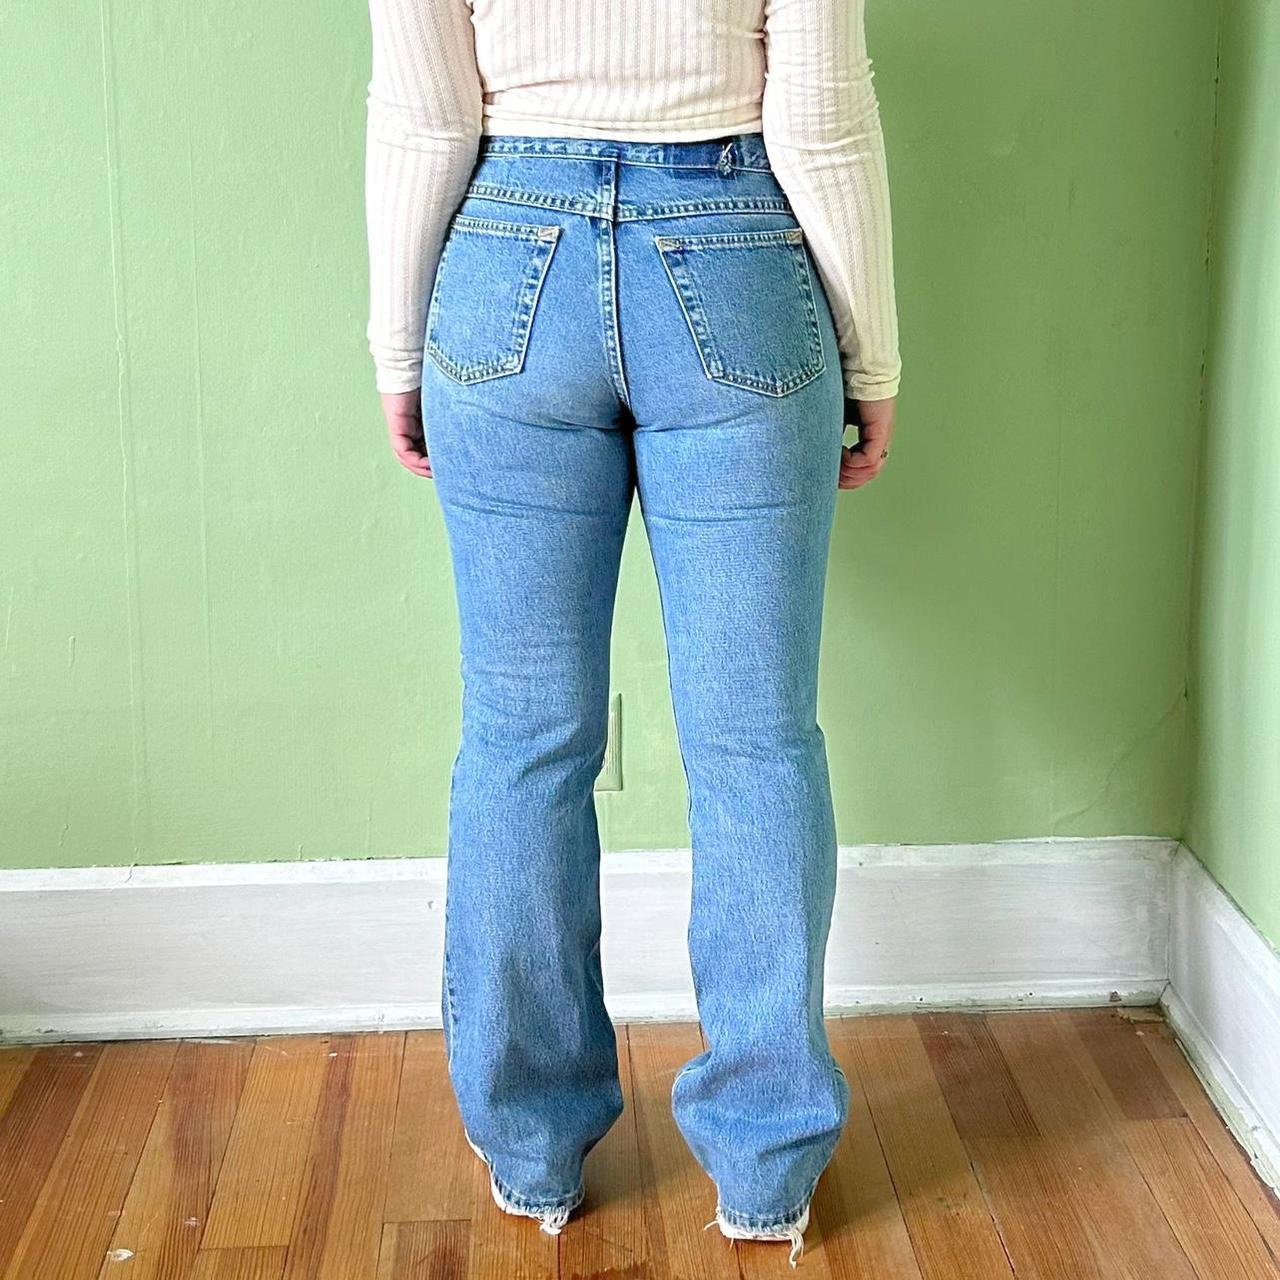 Retro Y2K Lee Bootcut Jeans 🔥 A beautiful pair of... - Depop